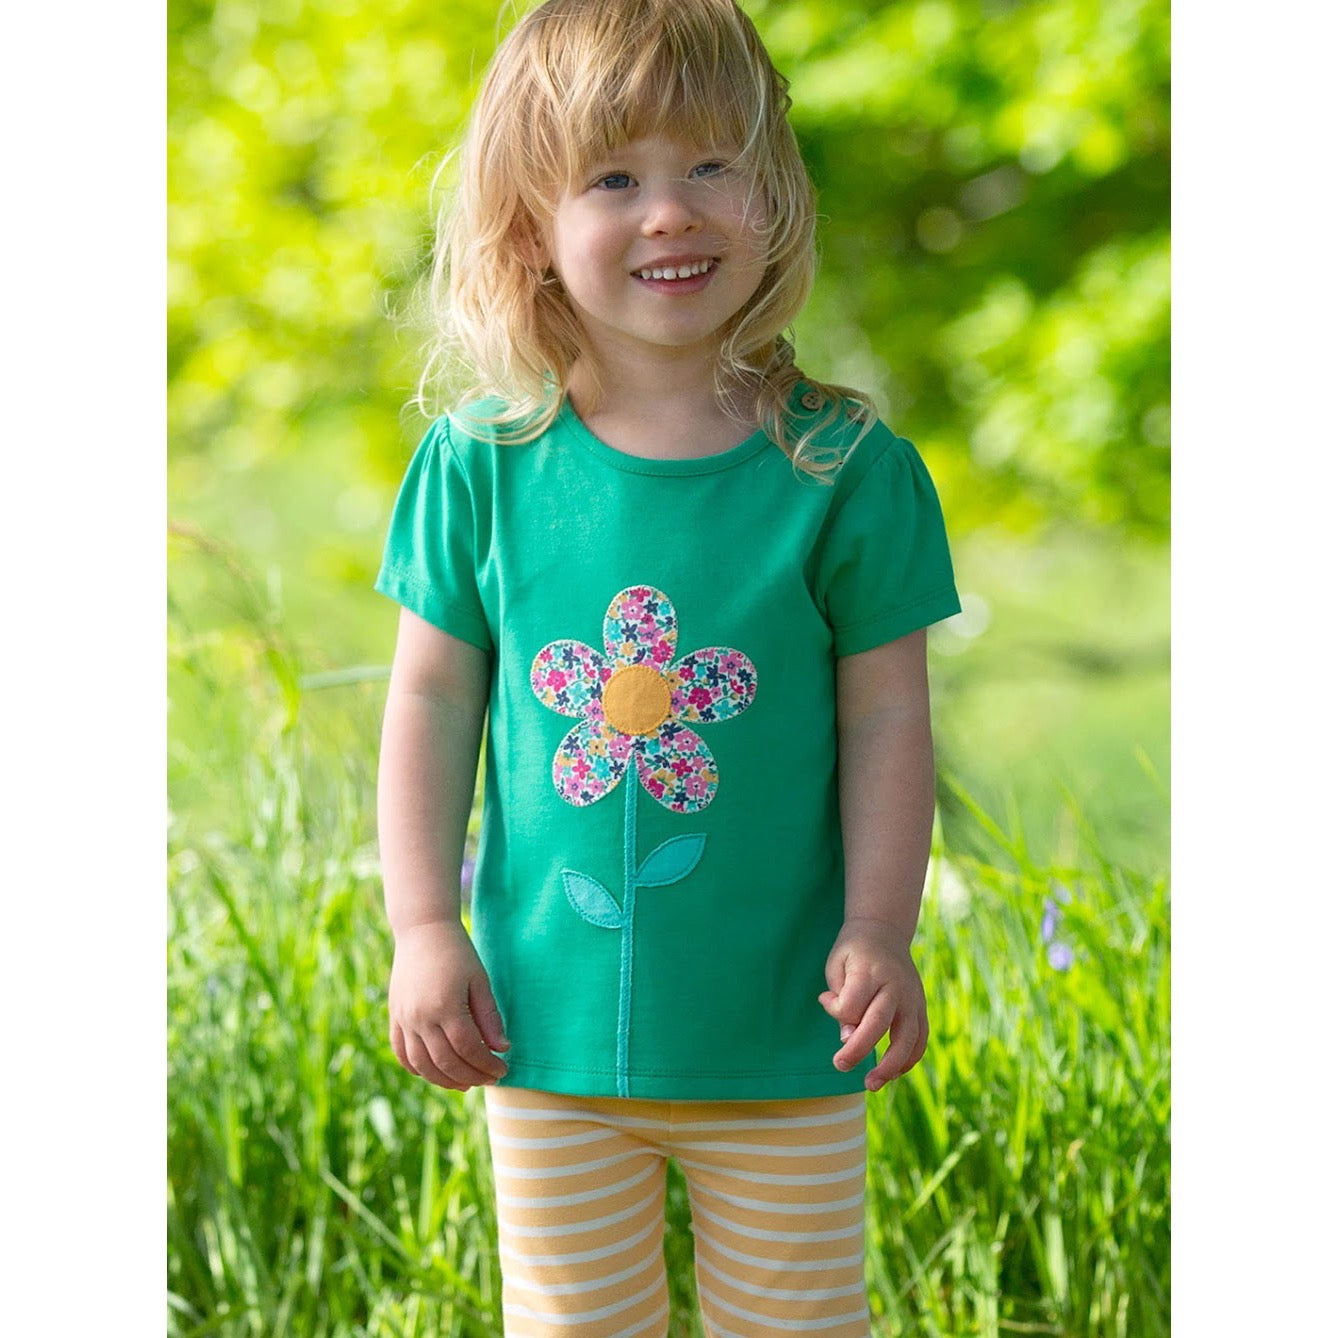 Kite Infant Flower T-Shirt F285 Clothing 3-6M / Green,6-9M / Green,9-12M / Green,12-18M / Green,18-24M/2Y / Green